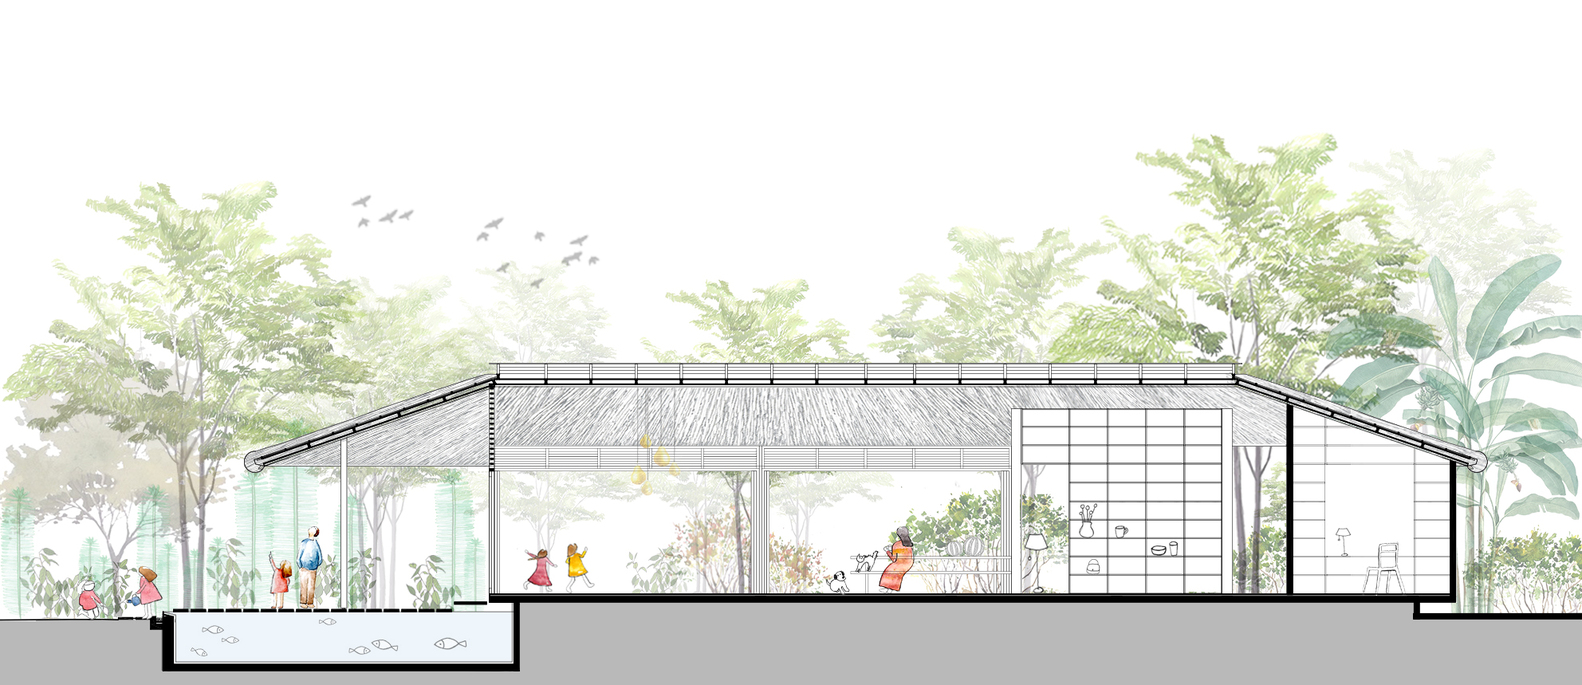 Am House: Biệt thự nhà vườn xanh mướt tại Long An với nét kiến trúc đặc trưng miền Tây Nam Bộ - Ảnh 22